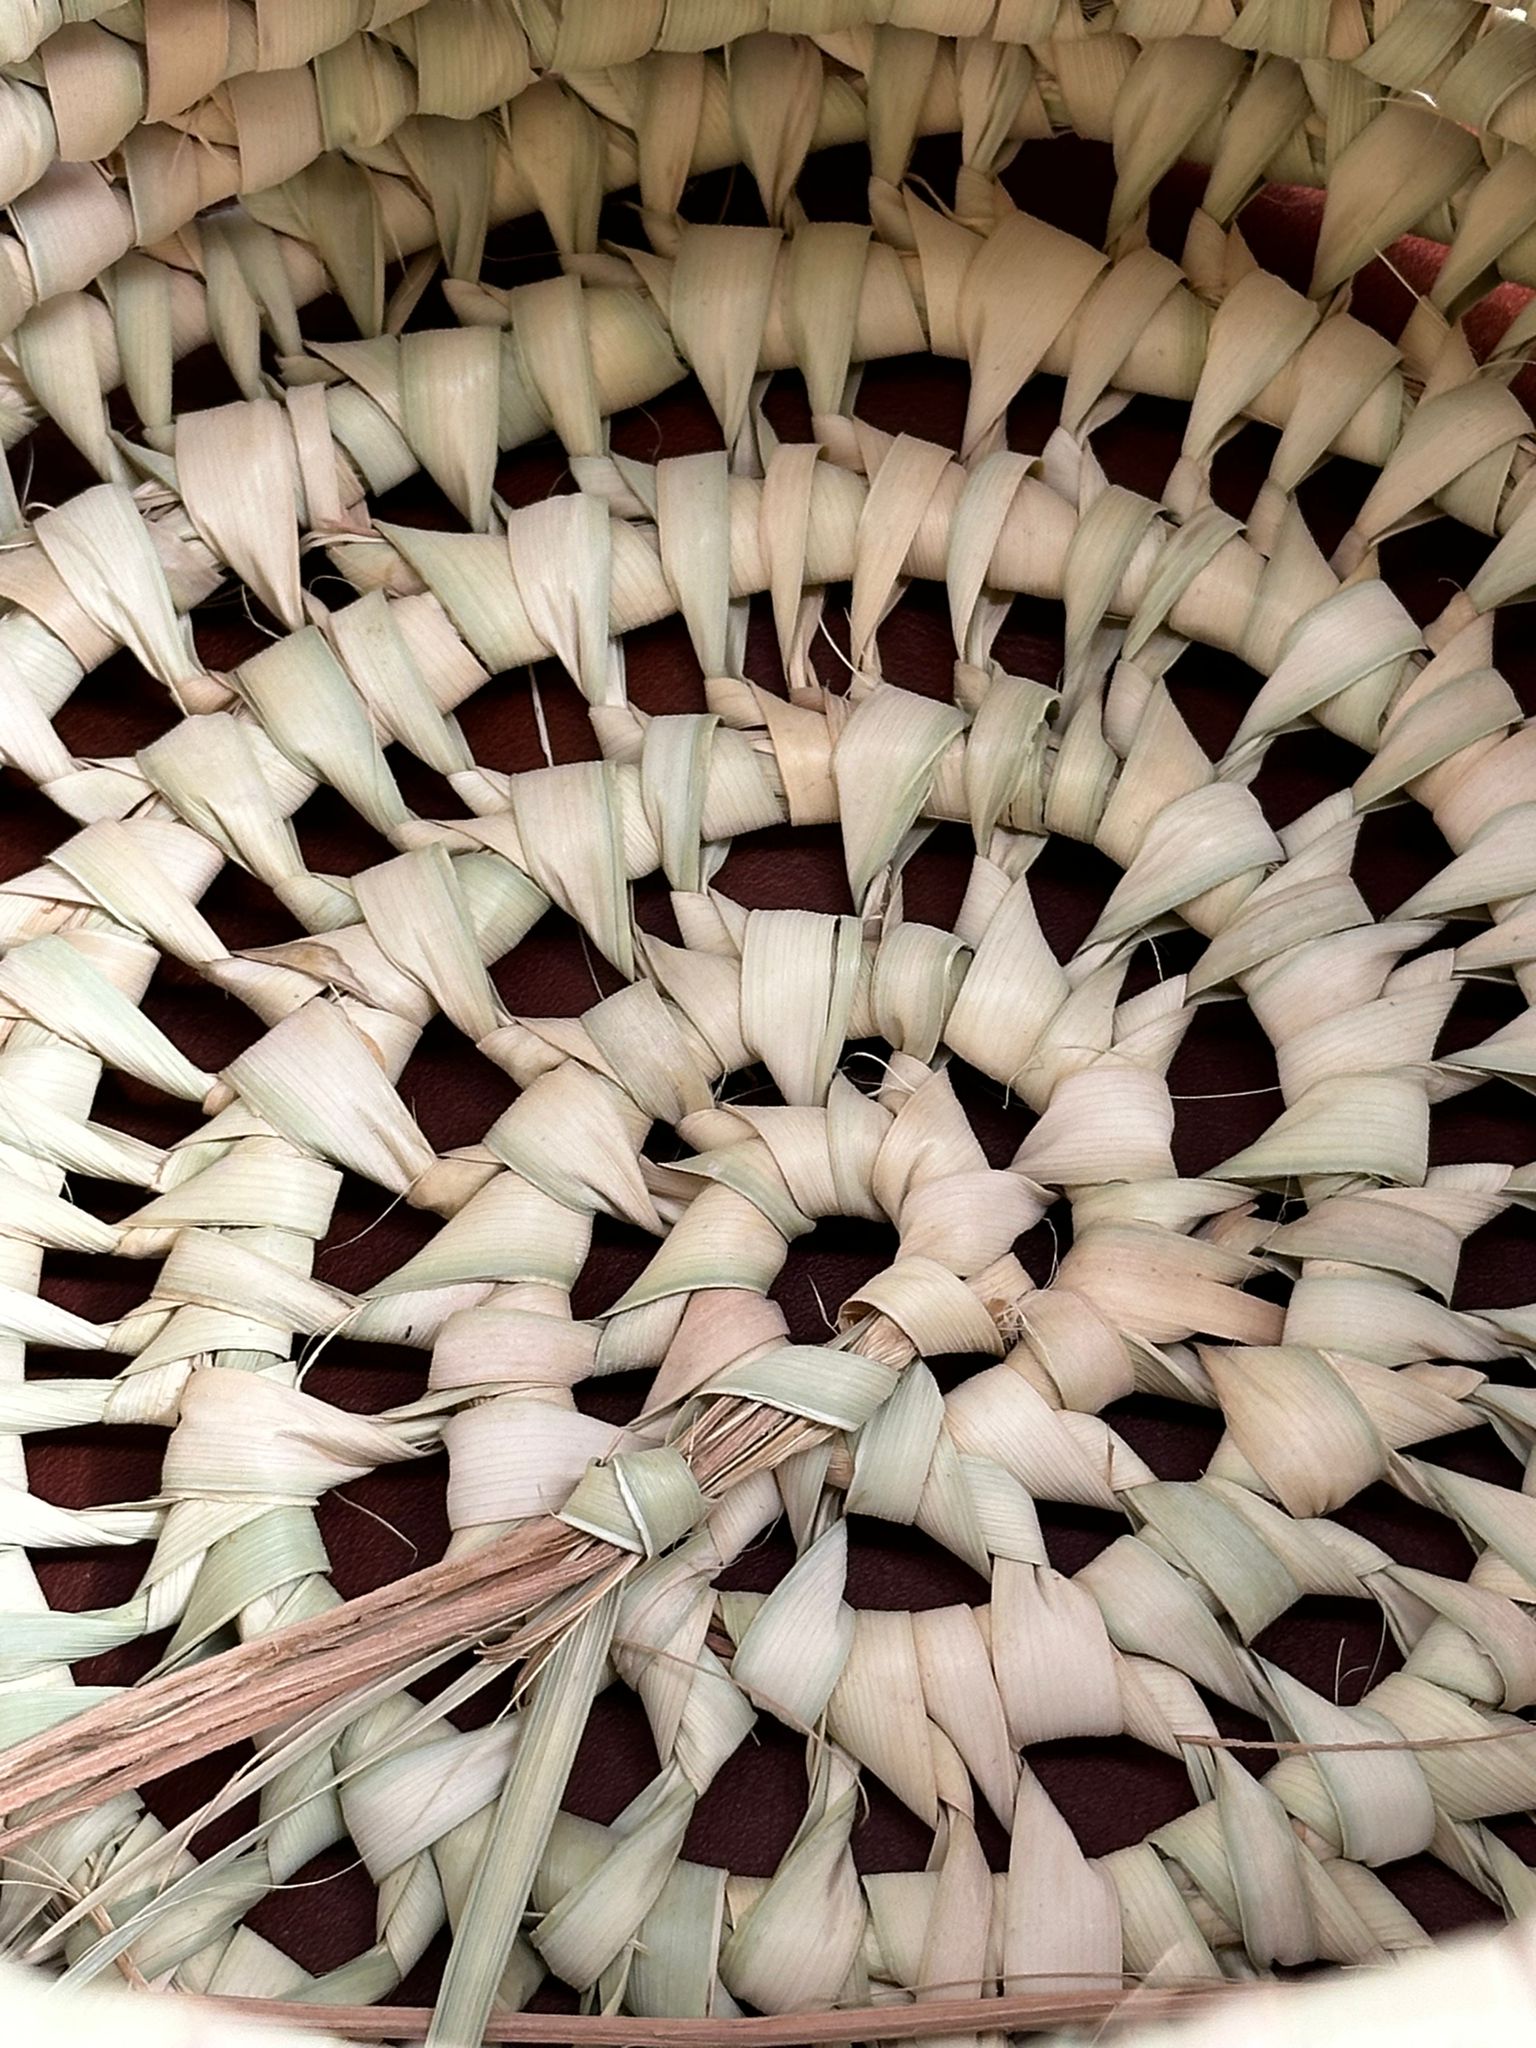 Palm Leaf Open Weave Round Storage Basket